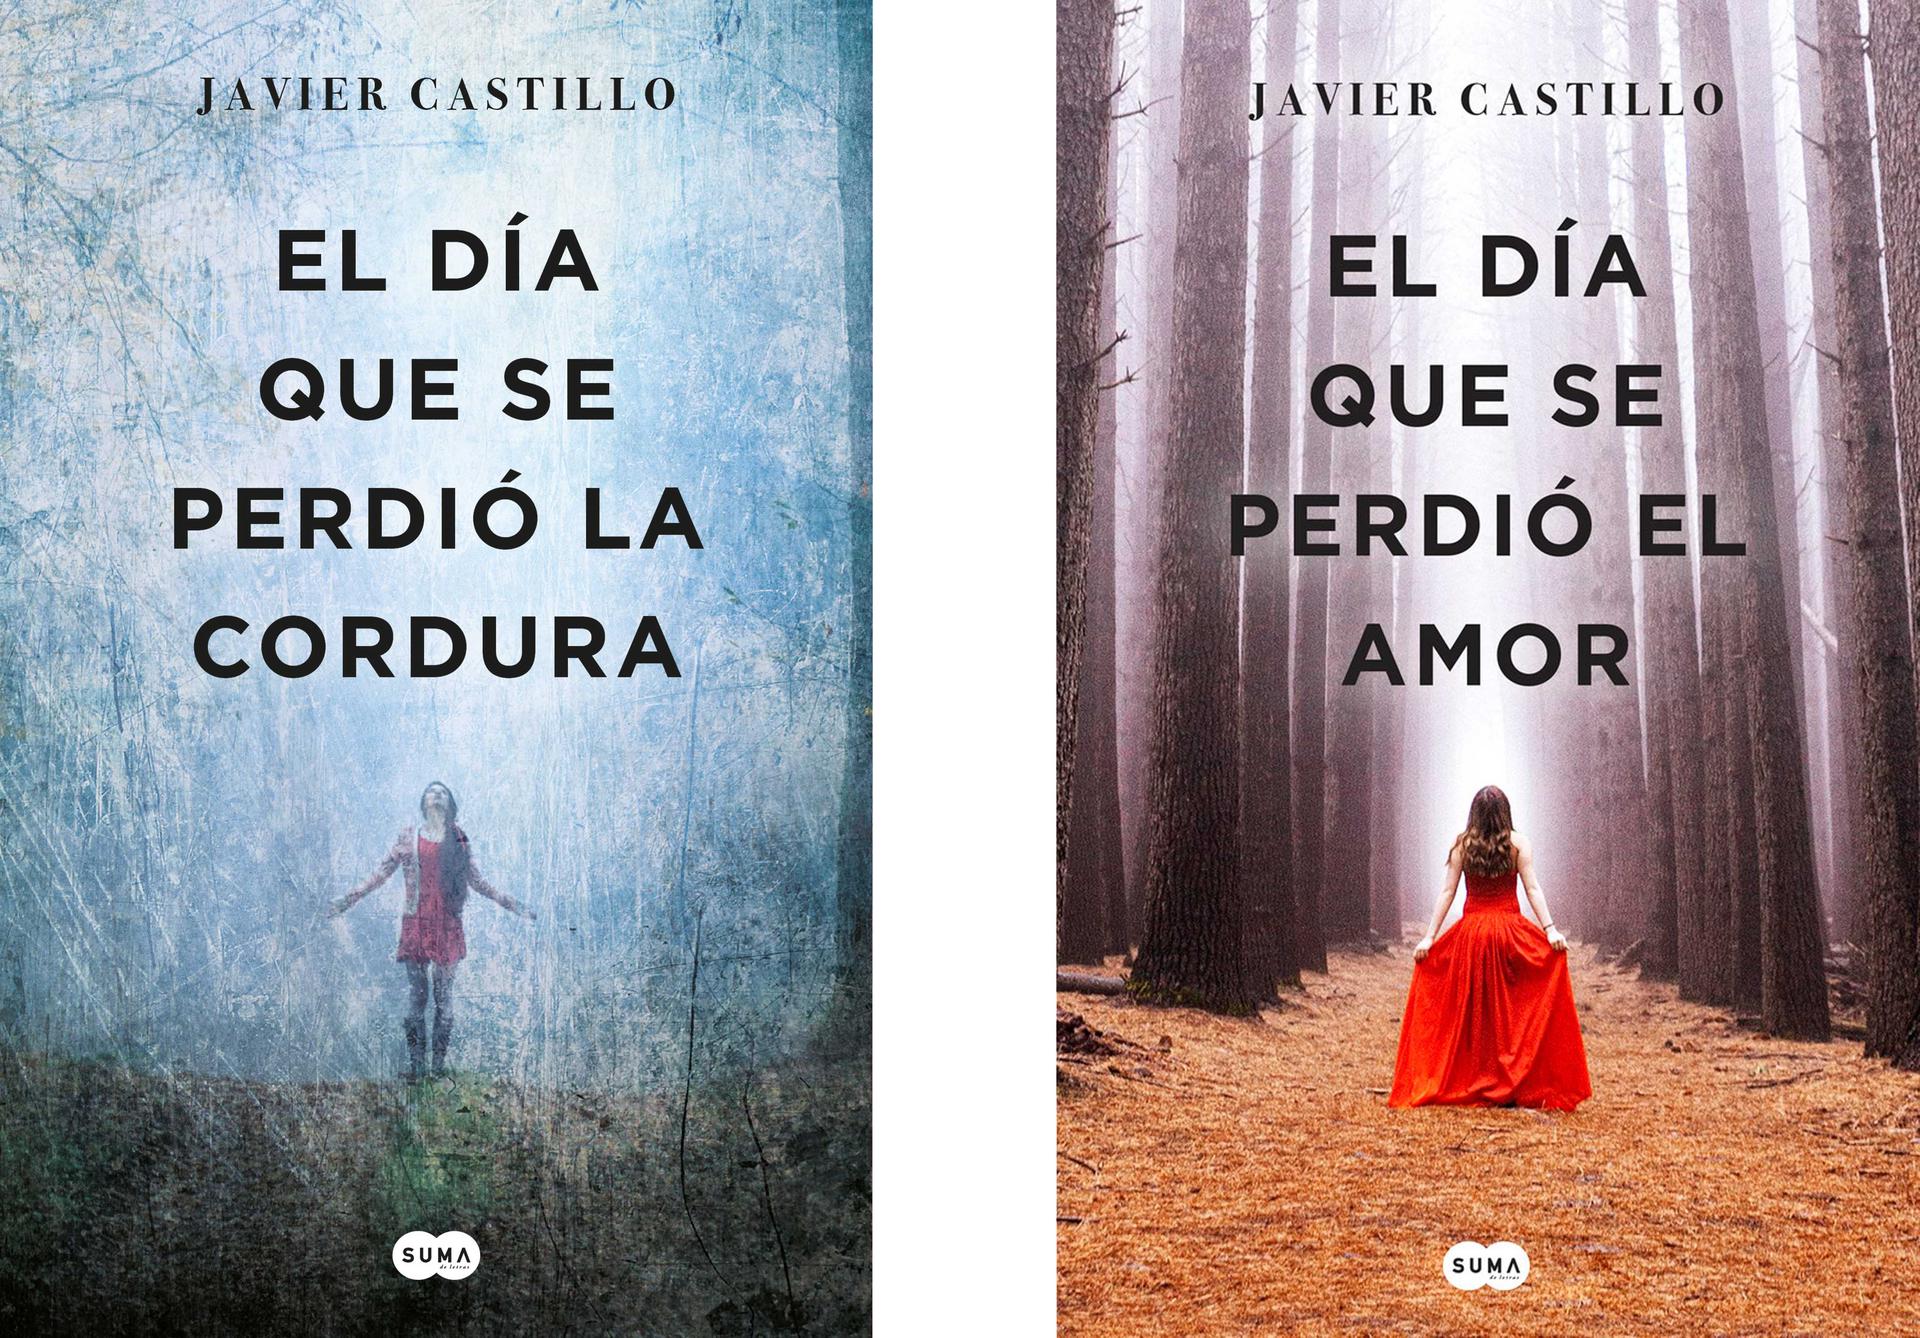 'El Día que se perdió la cordura' y 'El Día que se Perdió el Amor' de Javier Castillo se convierten en series de televisión